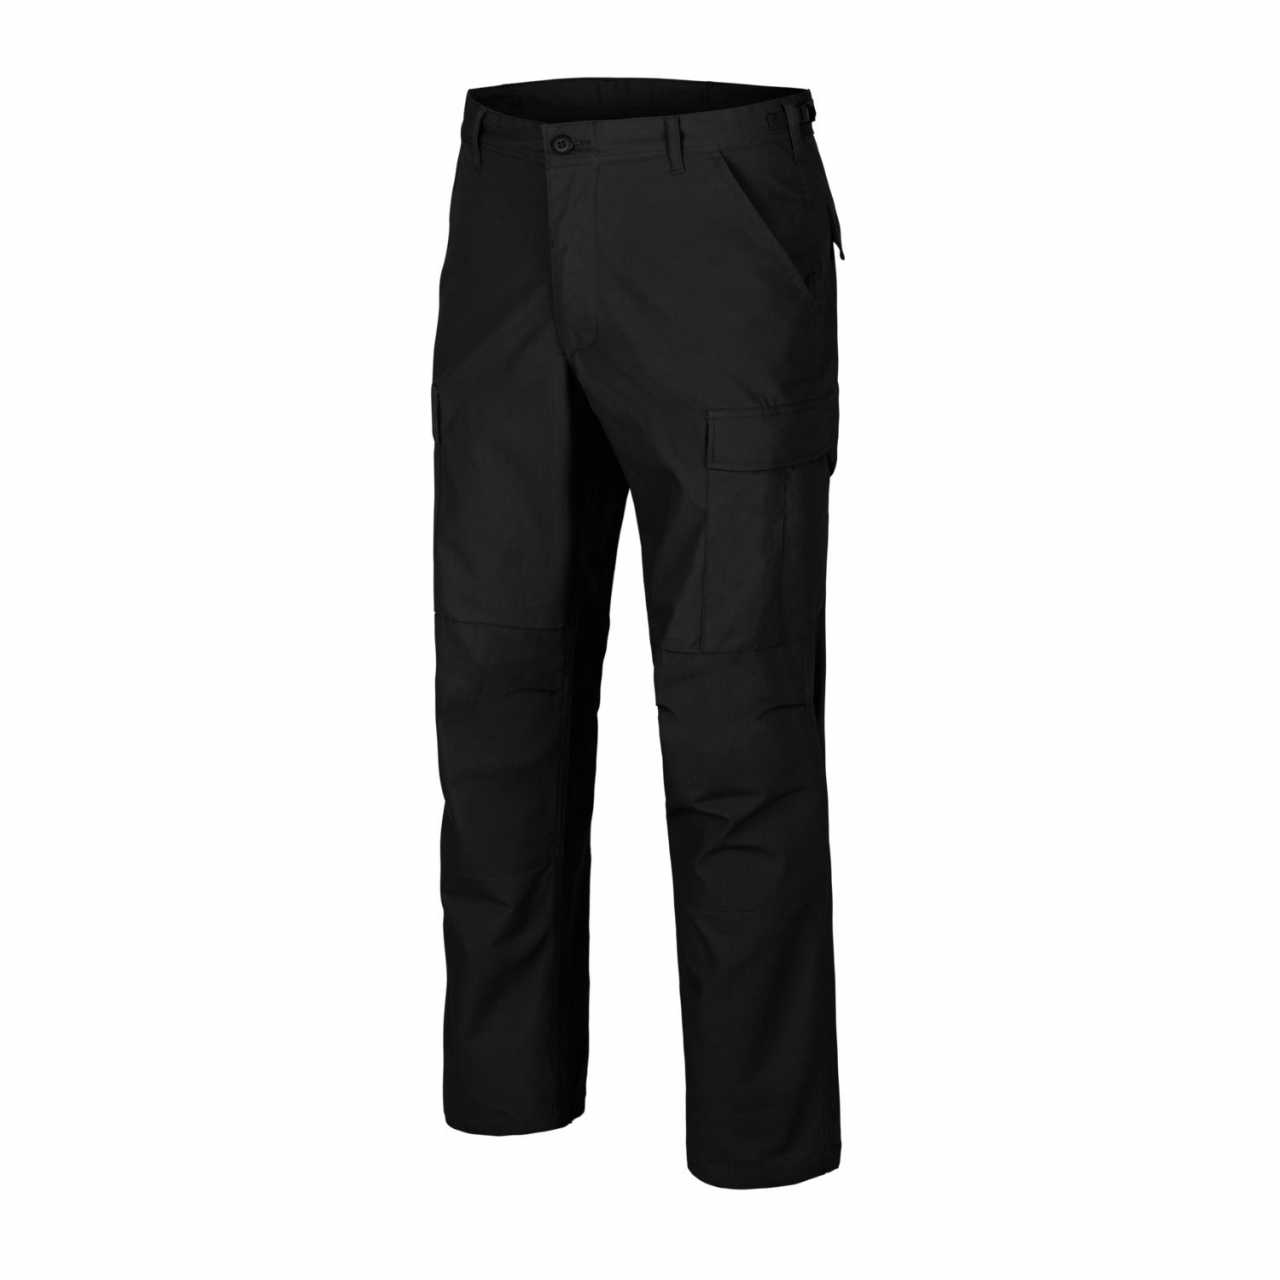 Kalhoty Helikon BDU Pants Poly Ripstop - černé, S